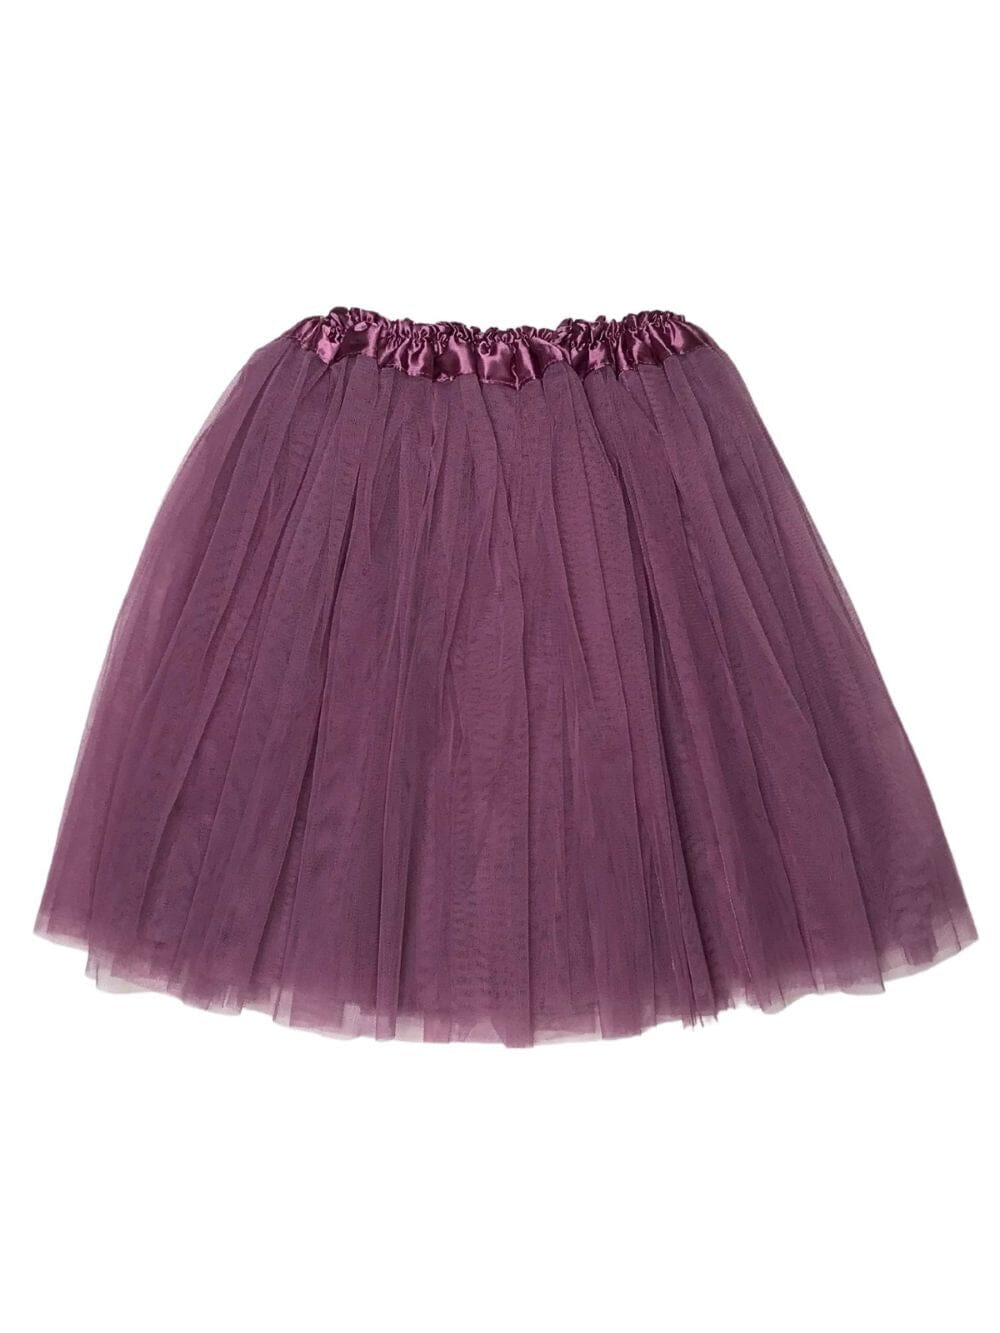 Plum Tutu Skirt for Adult - Women's Size 3-Layer Tulle Skirt Ballet Costume Dance Tutus - Sydney So Sweet